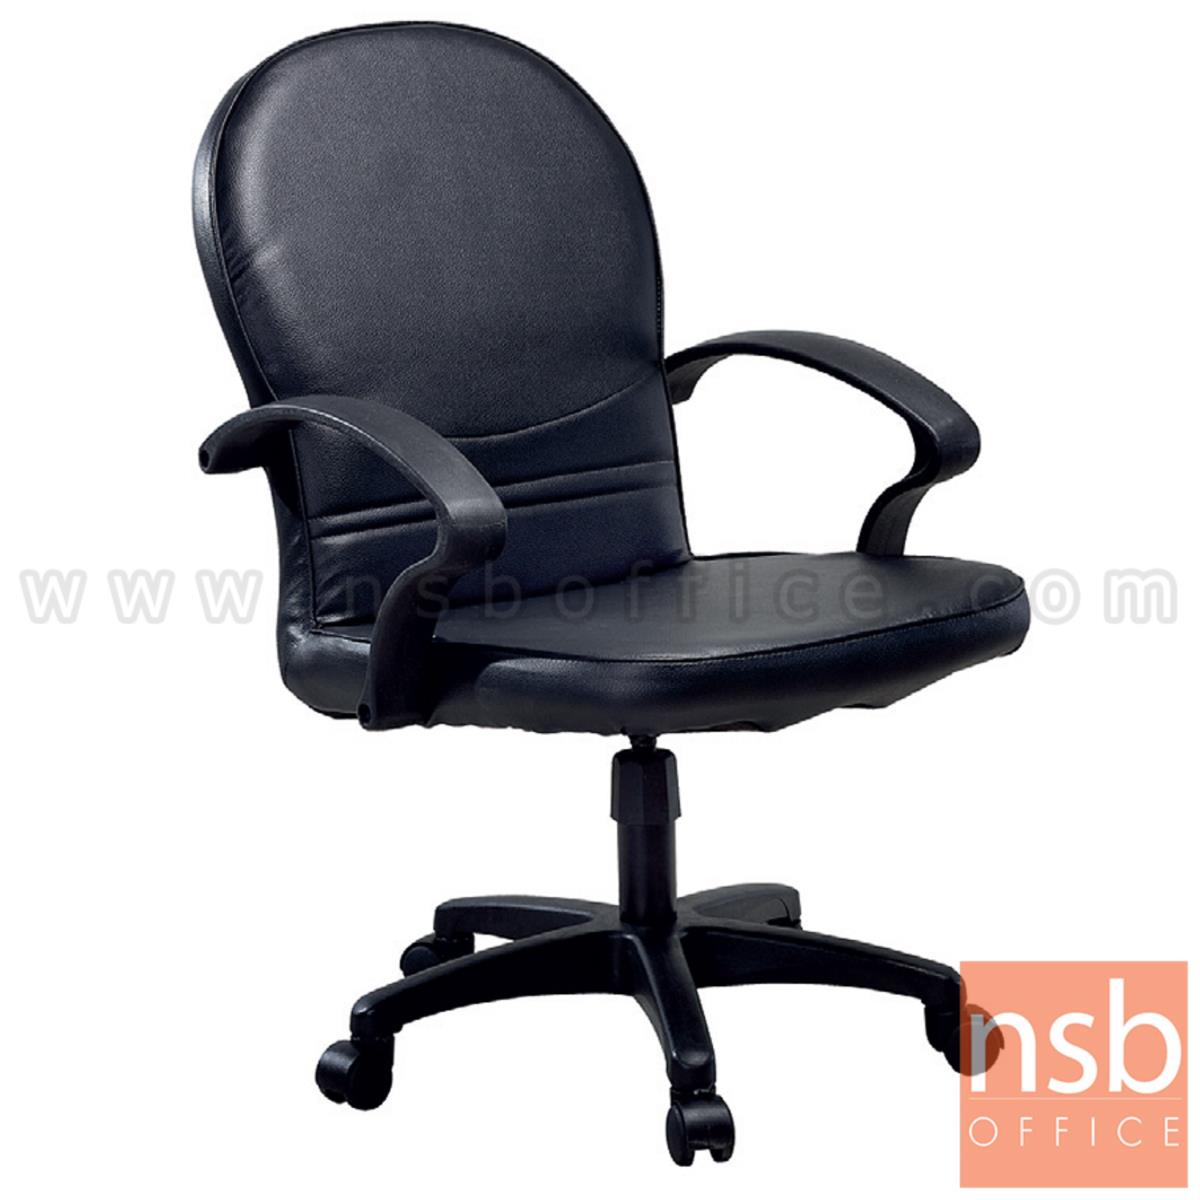 B03A408:เก้าอี้สำนักงาน  รุ่น DORA  ขาพลาสติก